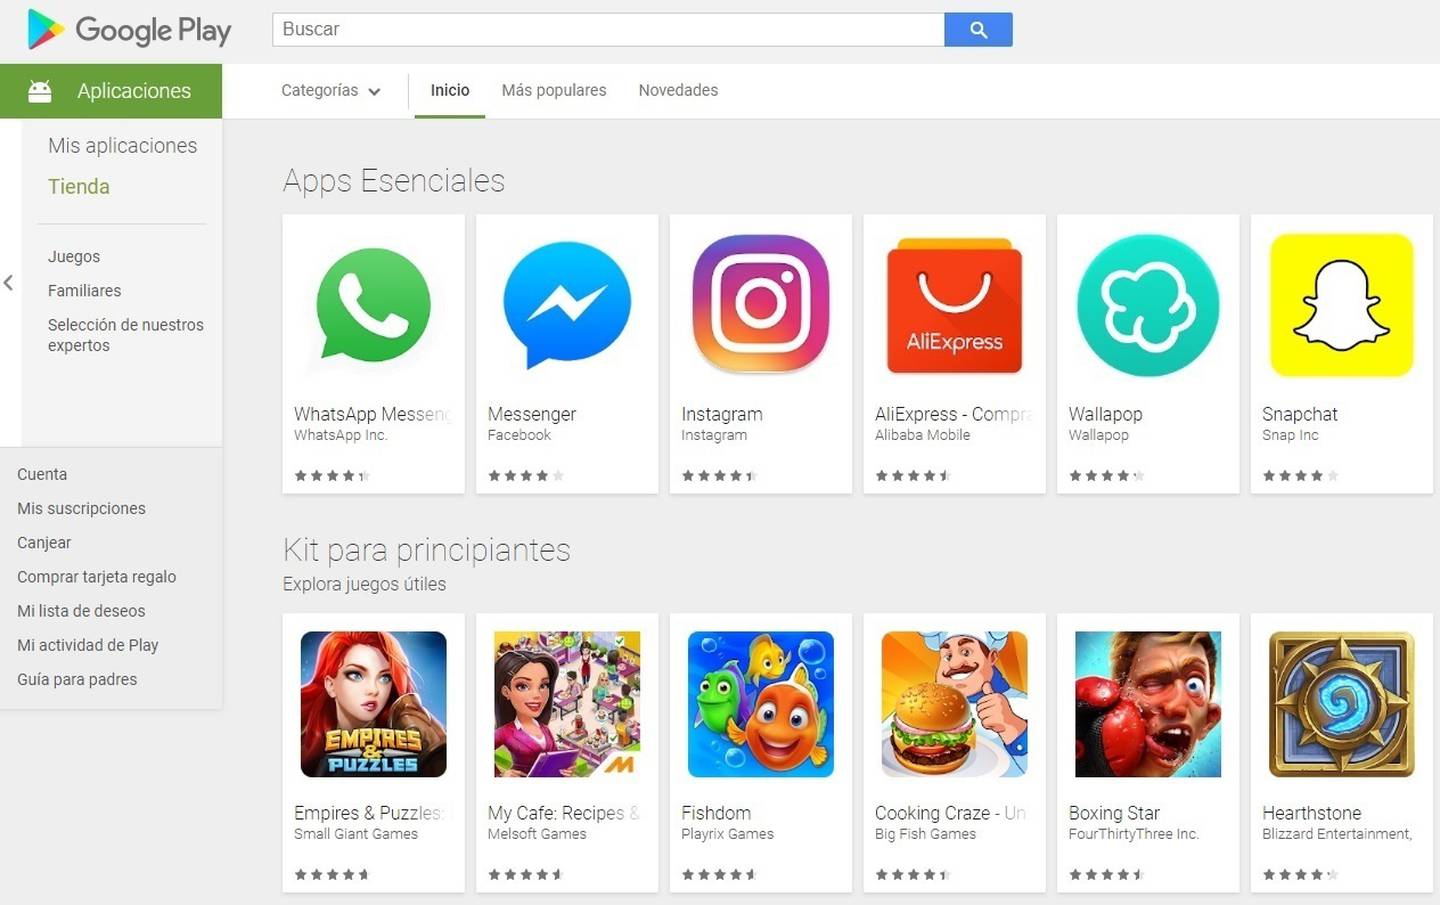 Google retirará aplicaciones inestables y con poco contenido de Play Store el 31 de agosto.